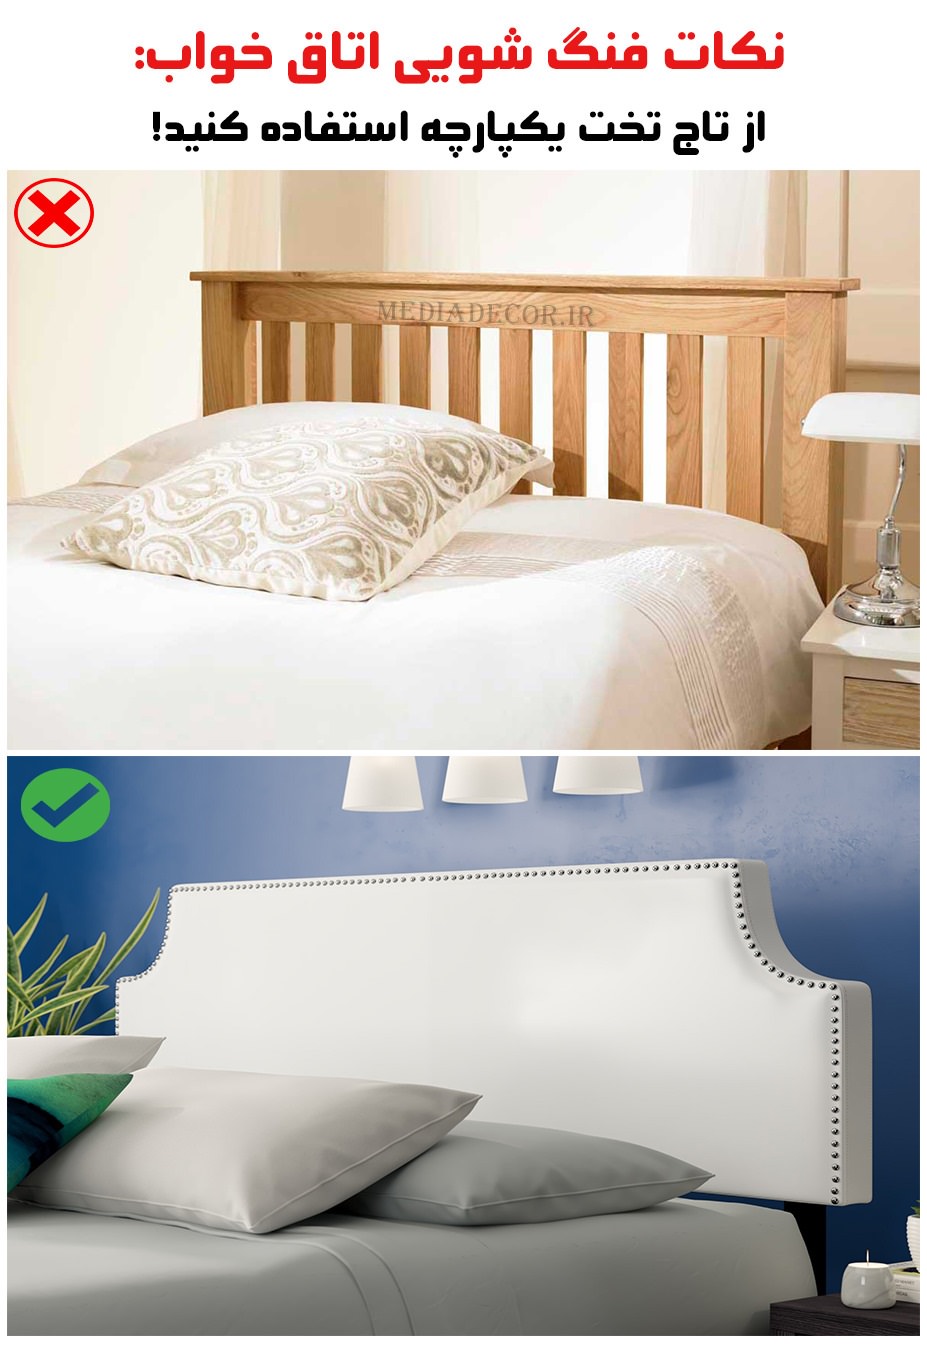 نکات فنگ شویی اتاق خواب: از تاج تخت یکپارچه استفاده کنید!